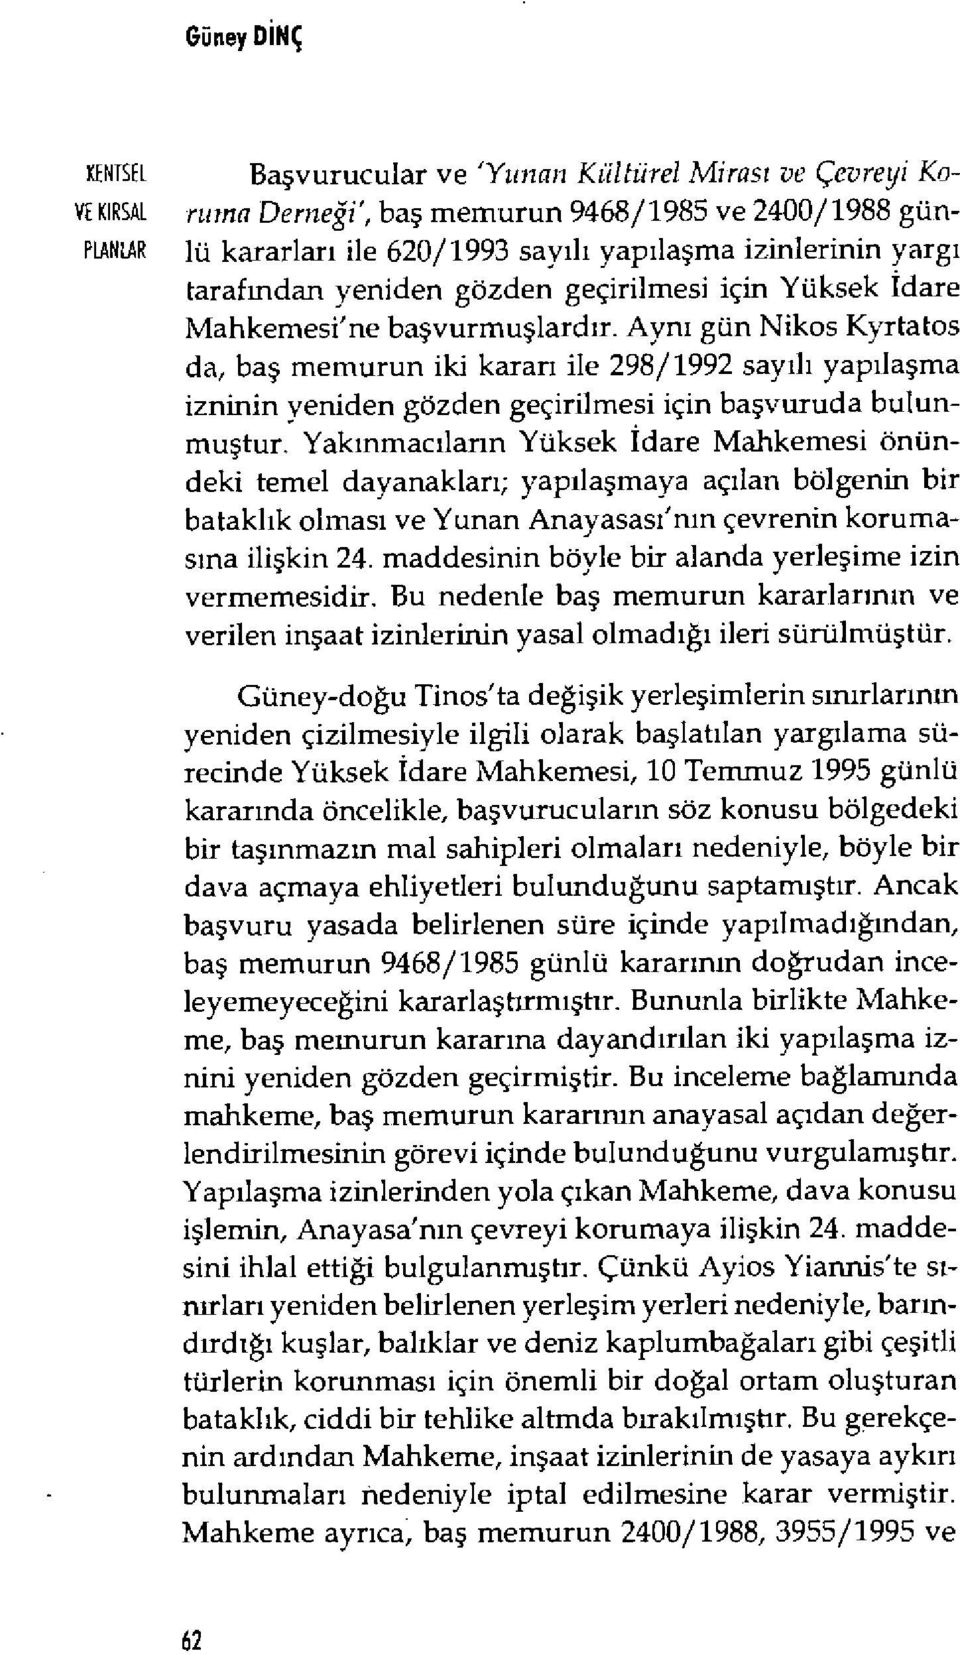 Aynı gün Nikos Kyrtatos da, baş memurun iki karar ı ile 298/1992 say ıl ı yap ıla şma izninin yeniden gözden geçirilmesi için ba şvuruda bulunmu ştur.